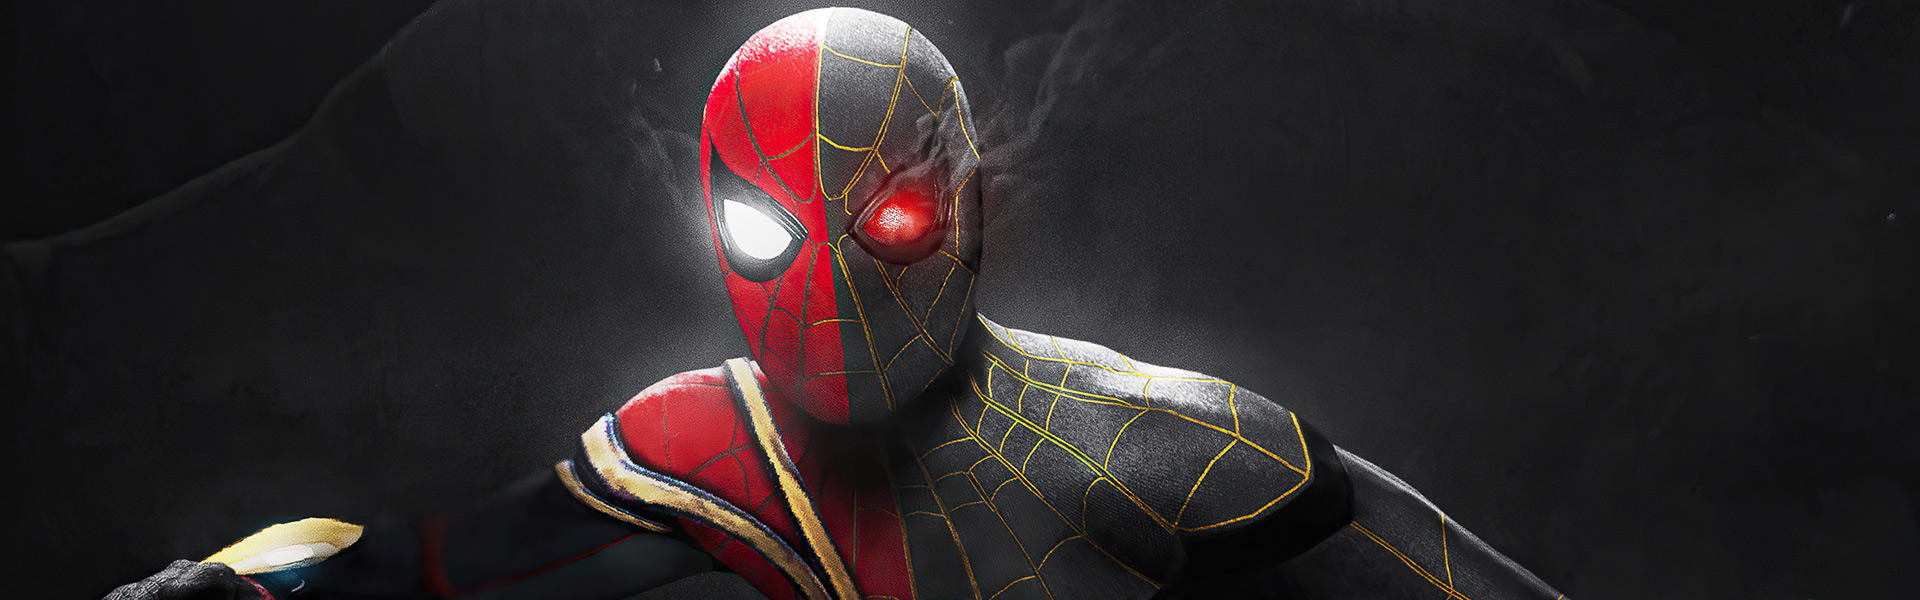 99+ hình ảnh người nhện - Spider man cực đẹp và chất